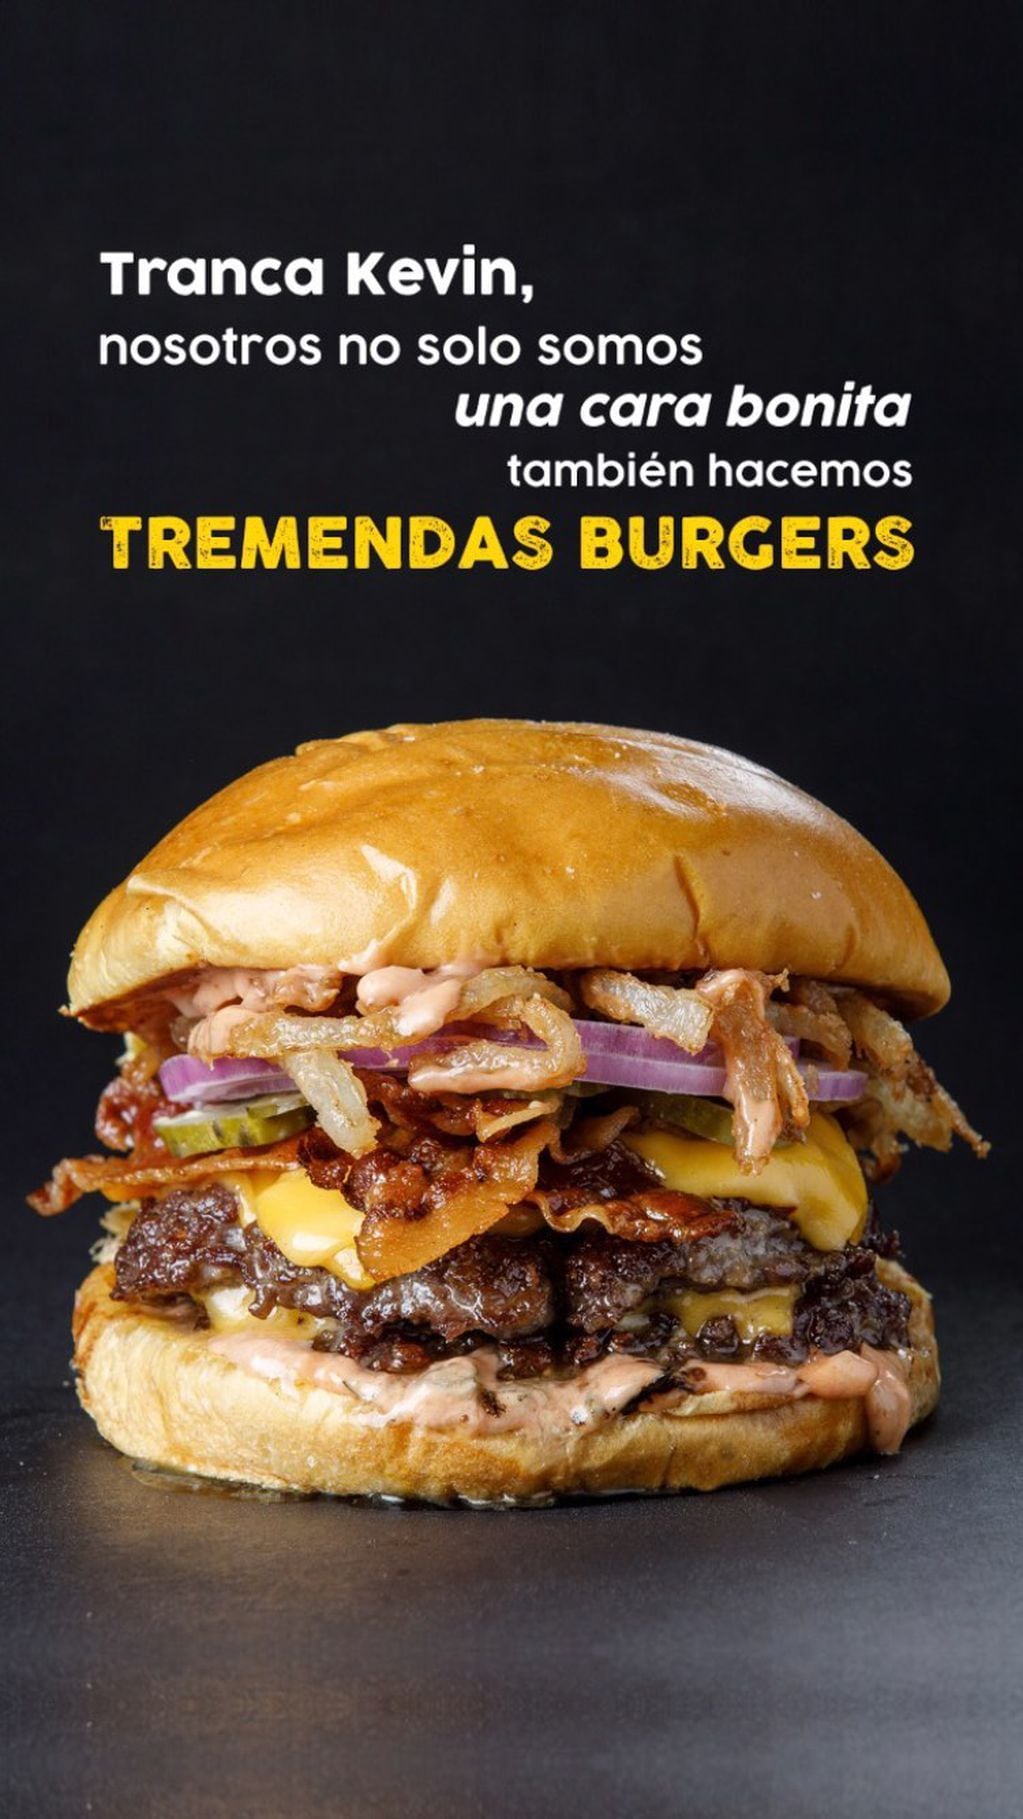 La hamburguesería argentina le contestó al actor Kevin Bacon